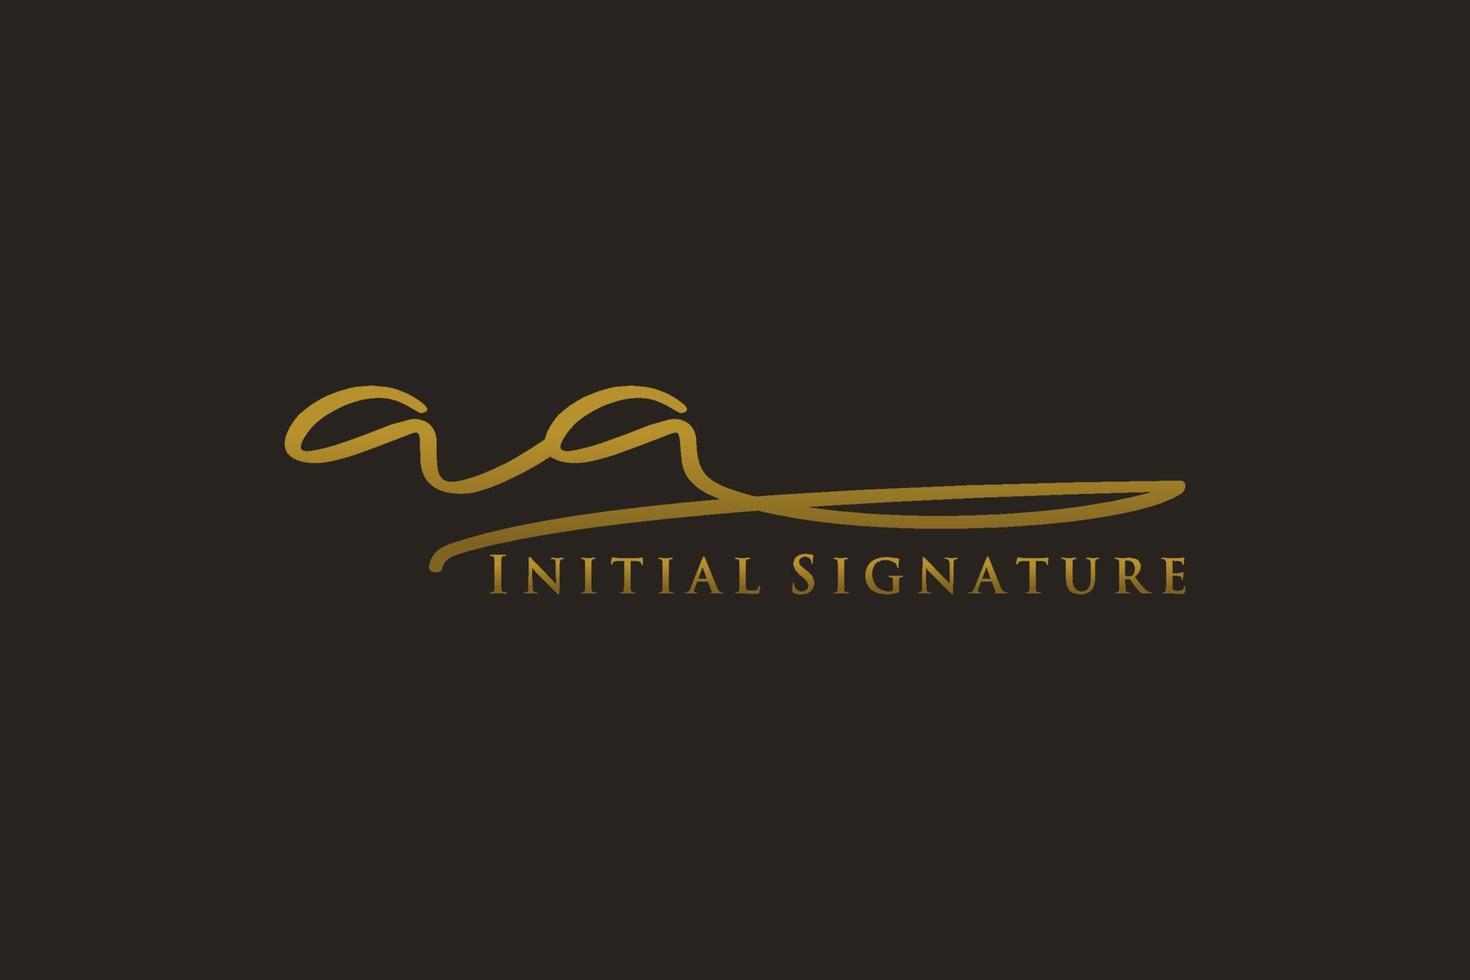 plantilla de logotipo de firma de carta inicial aa logotipo de diseño elegante. ilustración de vector de letras de caligrafía dibujada a mano.